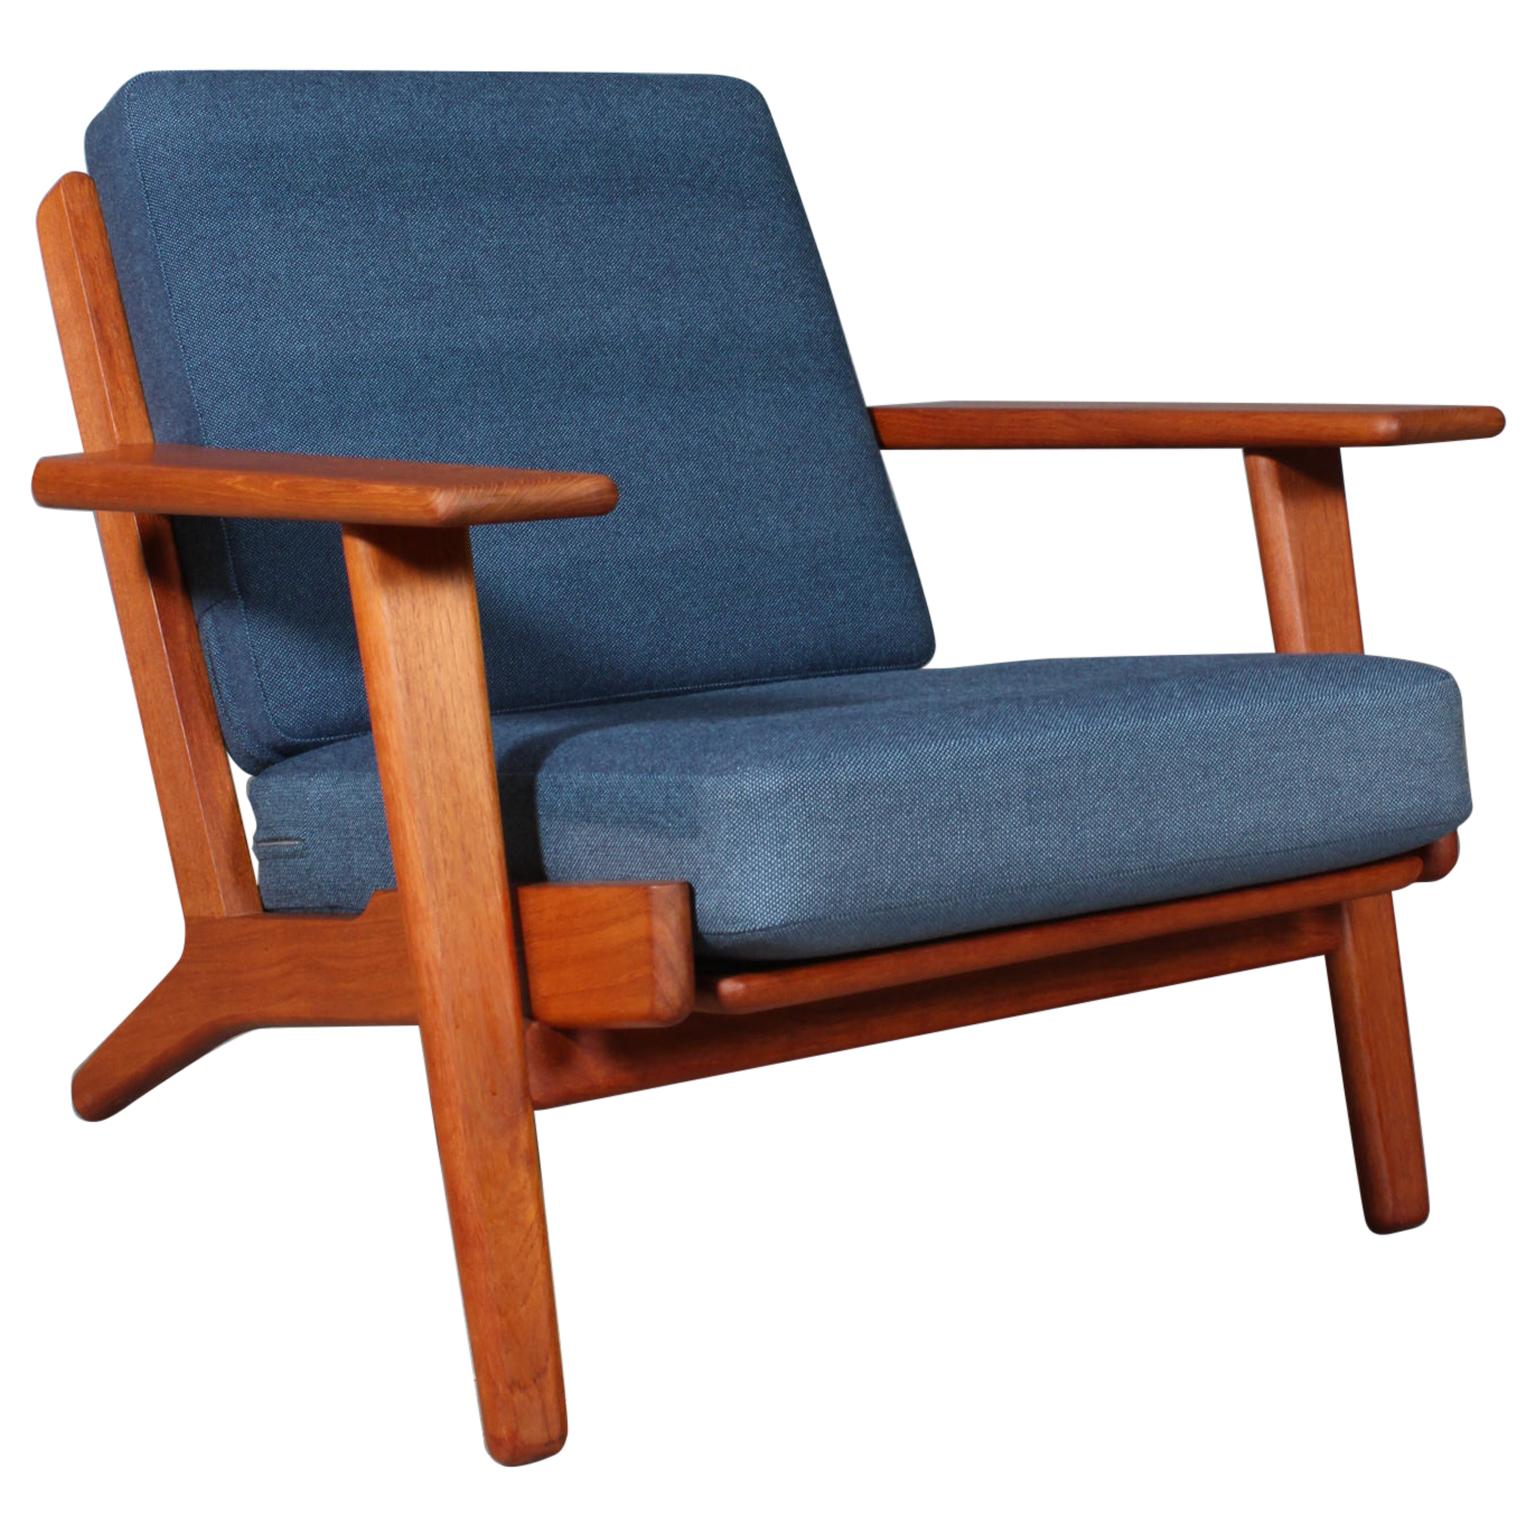 Hans J. Wegner, Lounge Chair, Model 290, Teak